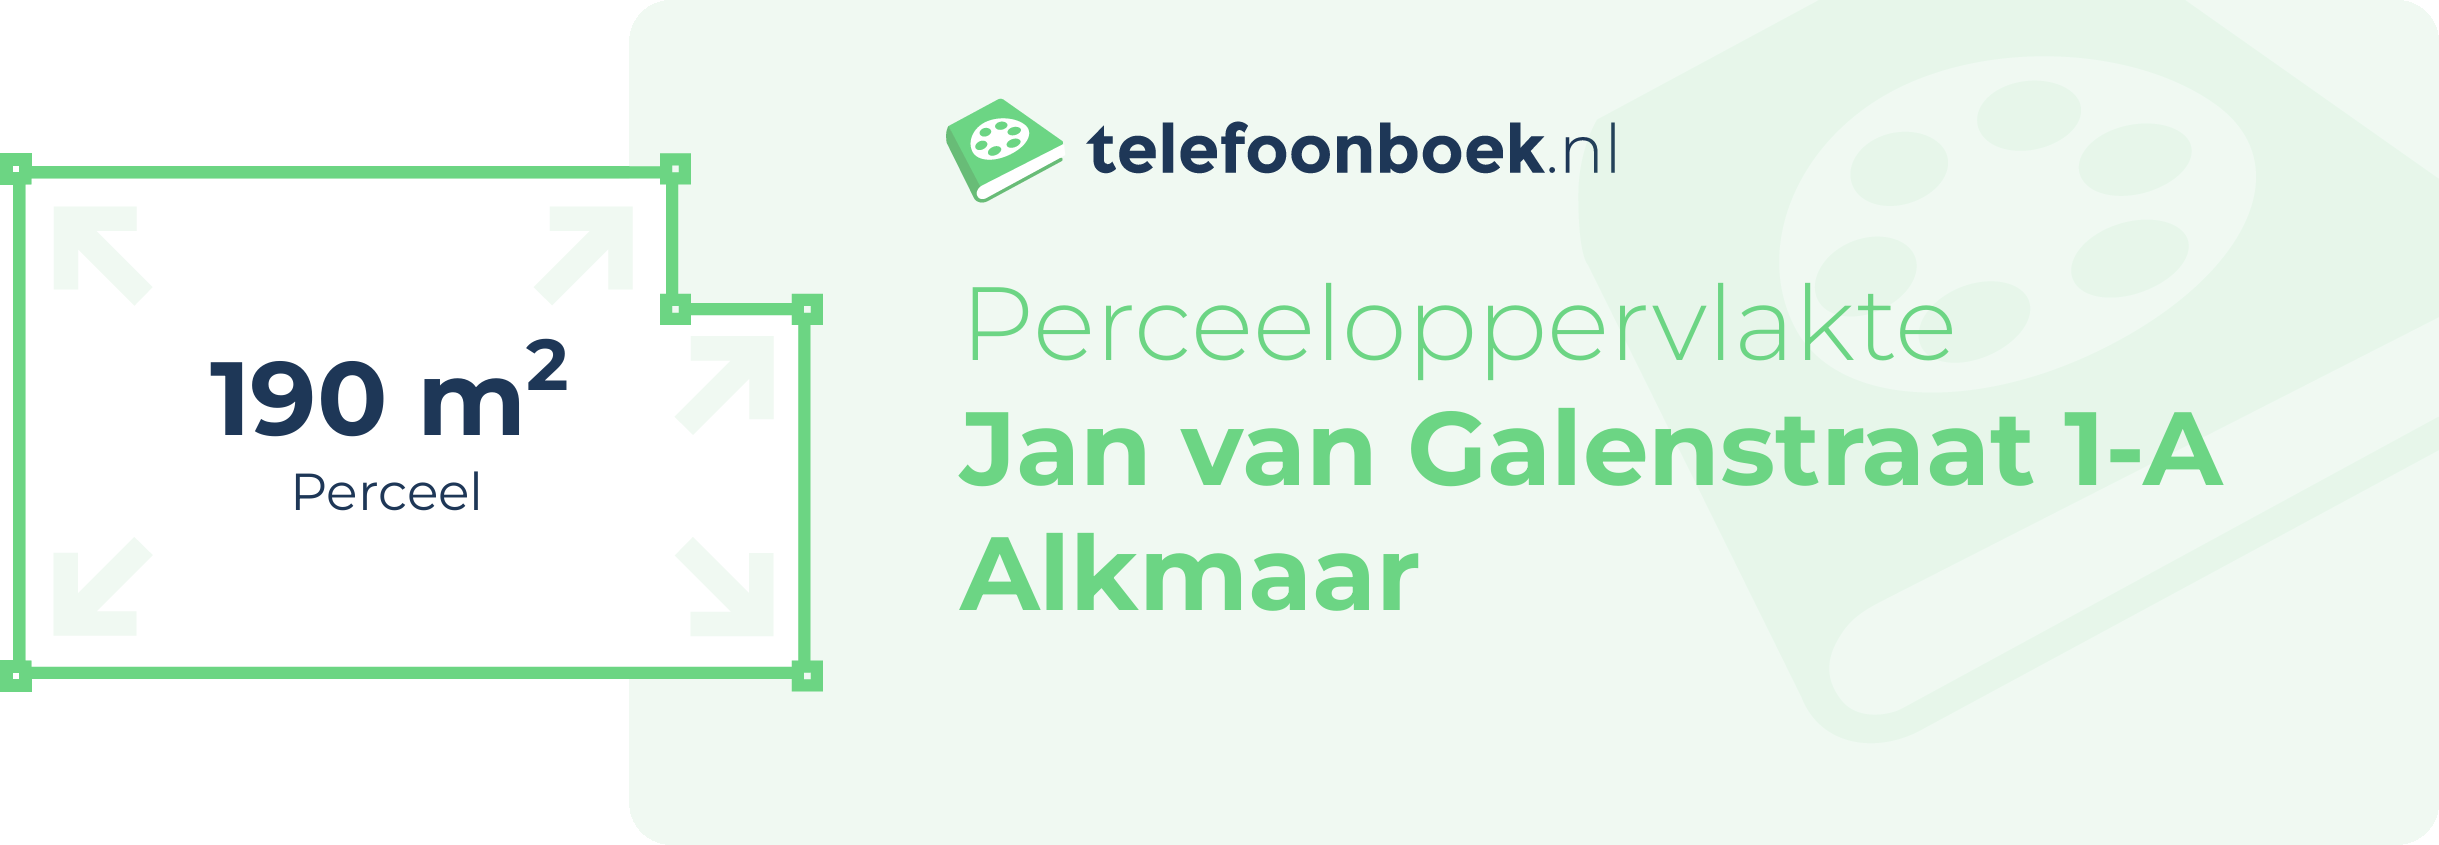 Perceeloppervlakte Jan Van Galenstraat 1-A Alkmaar